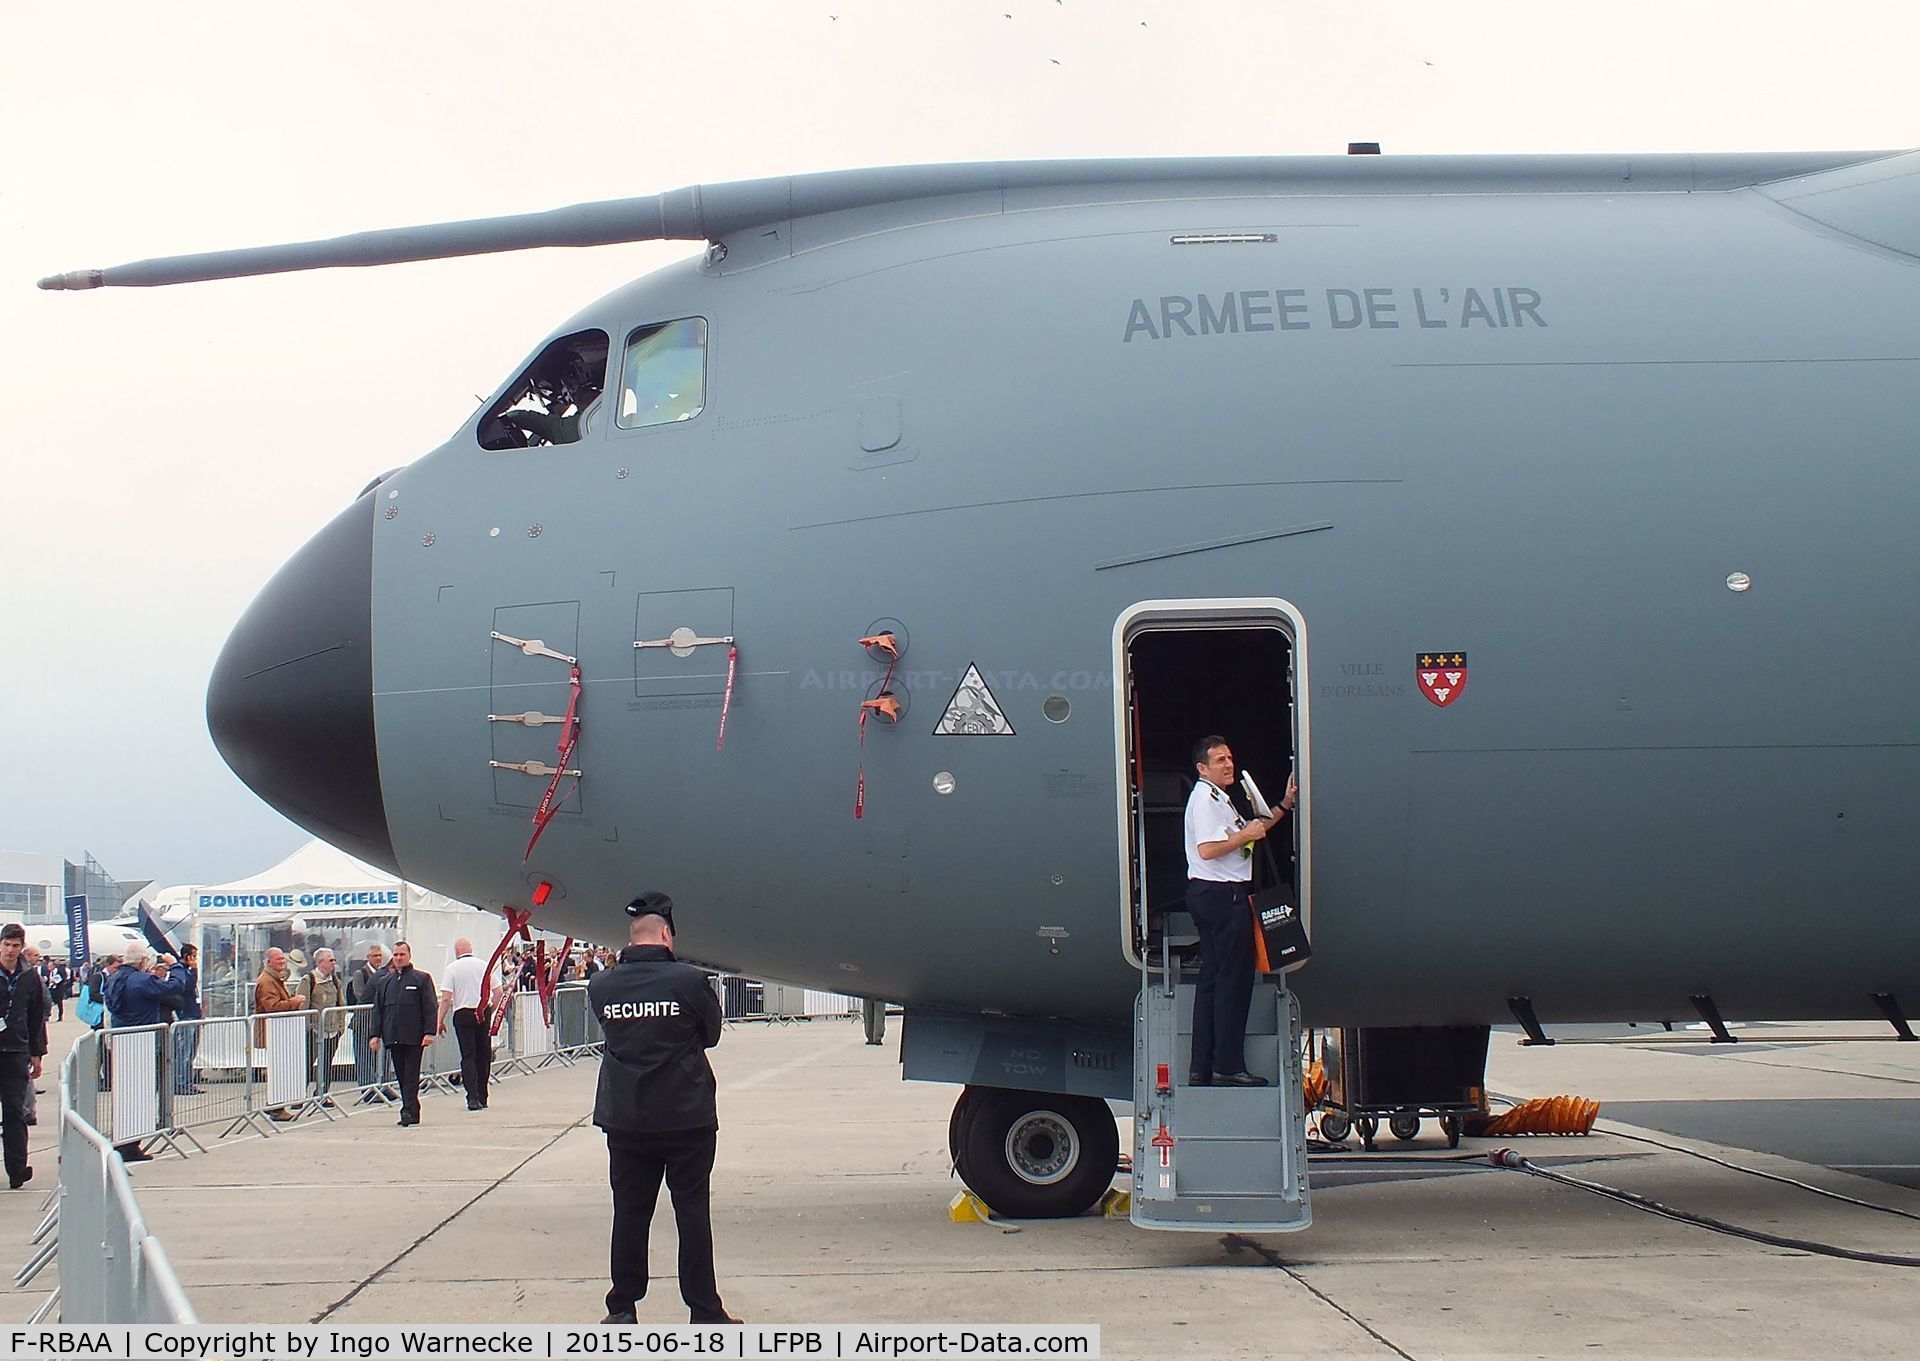 F-RBAA, 2013 Airbus A400M Atlas C/N 007, Airbus A400M Atlas of the Armee de l'Air at the Aerosalon 2015, Paris